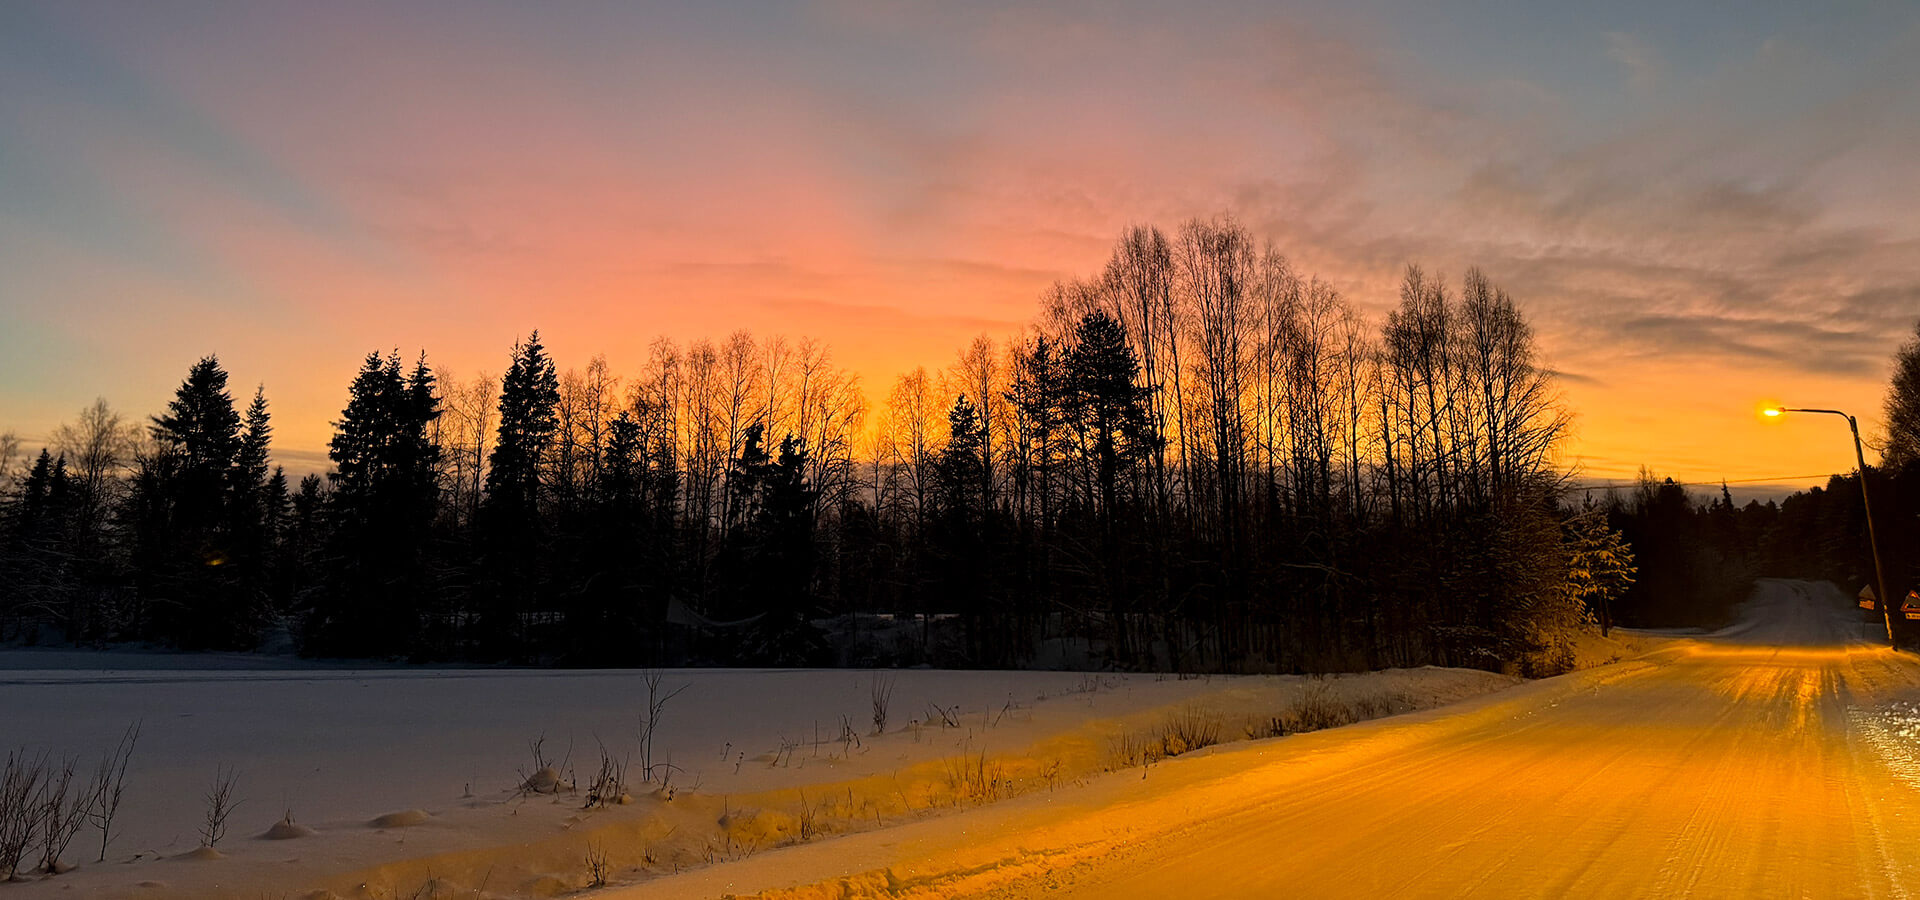 Conducir en Laponia en invierno con nieve, ¿es peligroso?